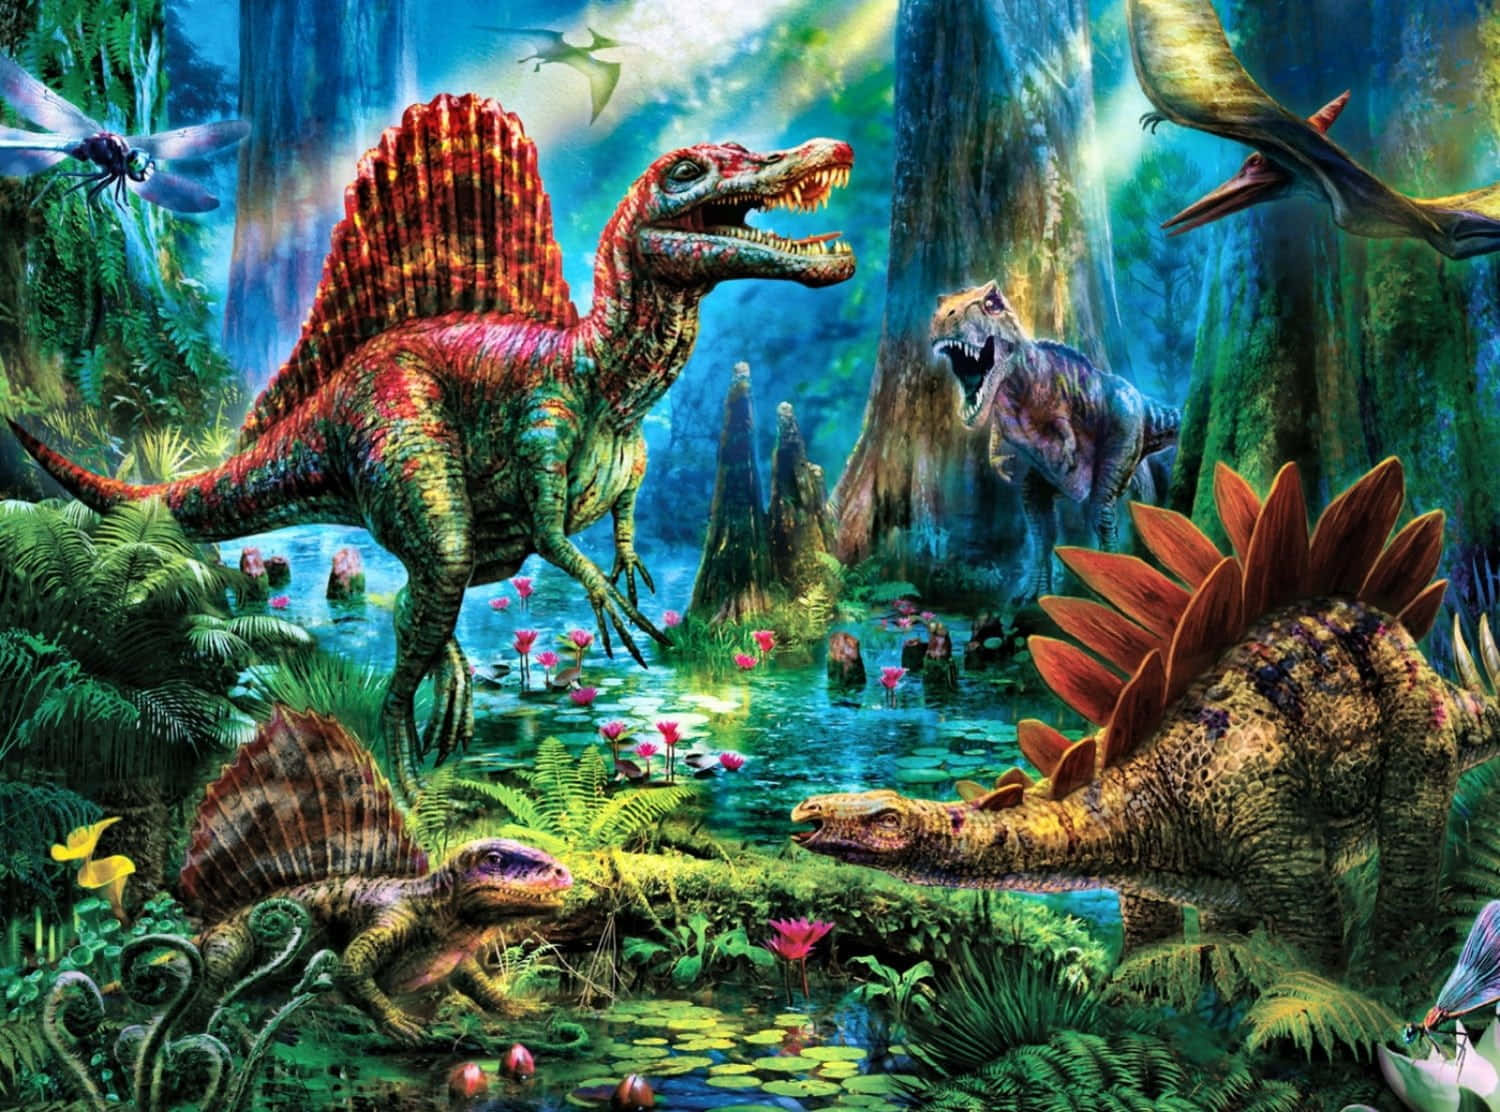 Imagende Spinosaurios En El Bosque